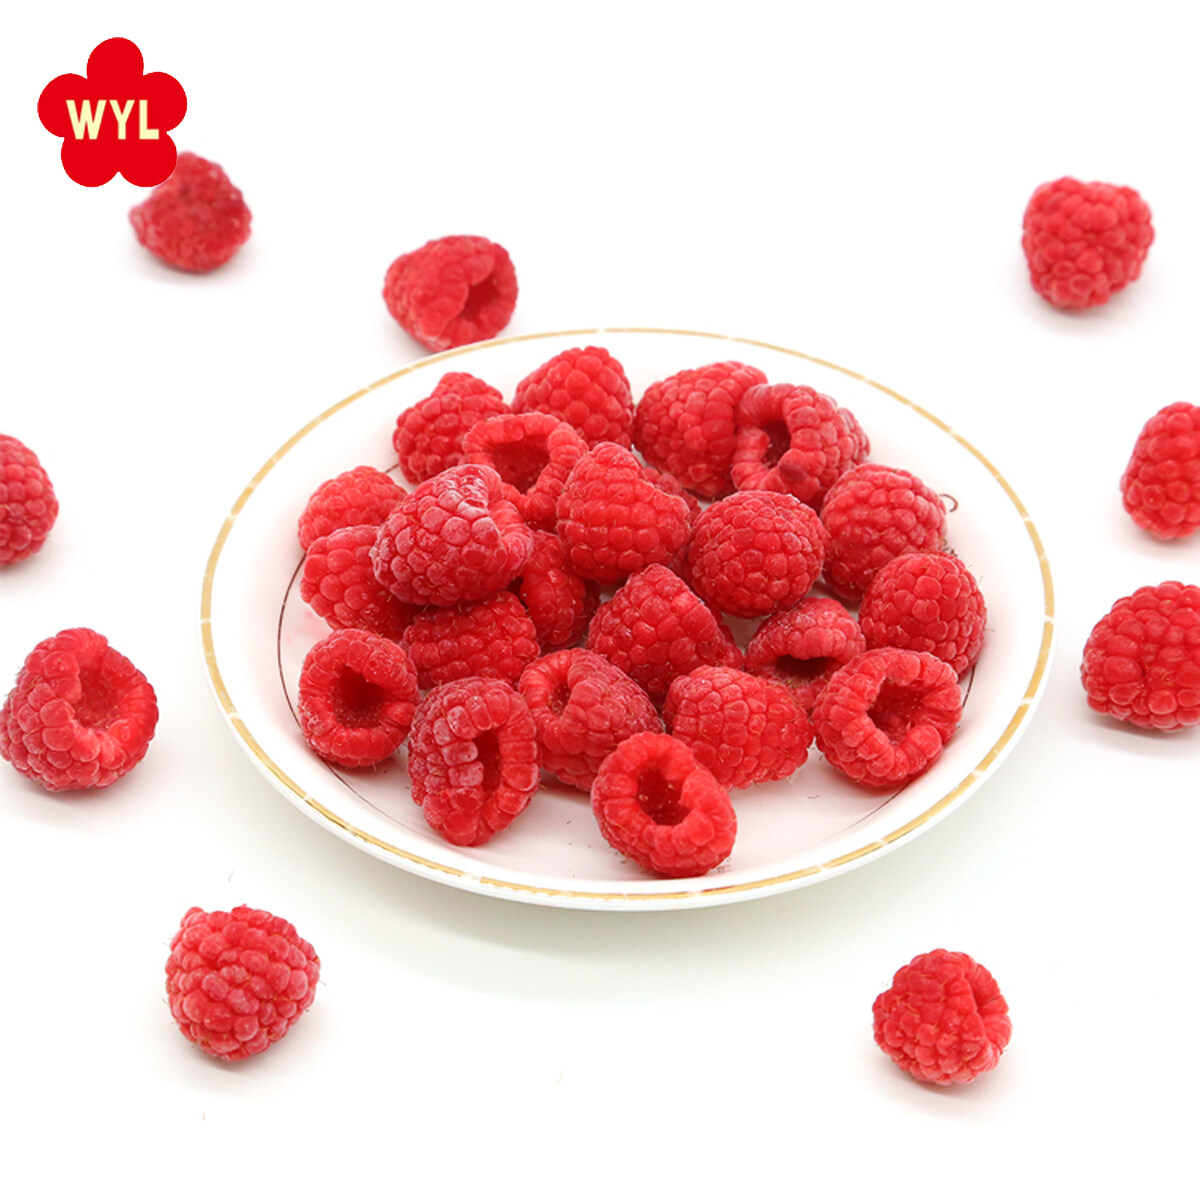 Raspberry RaspberryFrozenfrozen IQF Fruit Cina Migliore prezzo Esportazione IQF Fruit di lamponi congelati